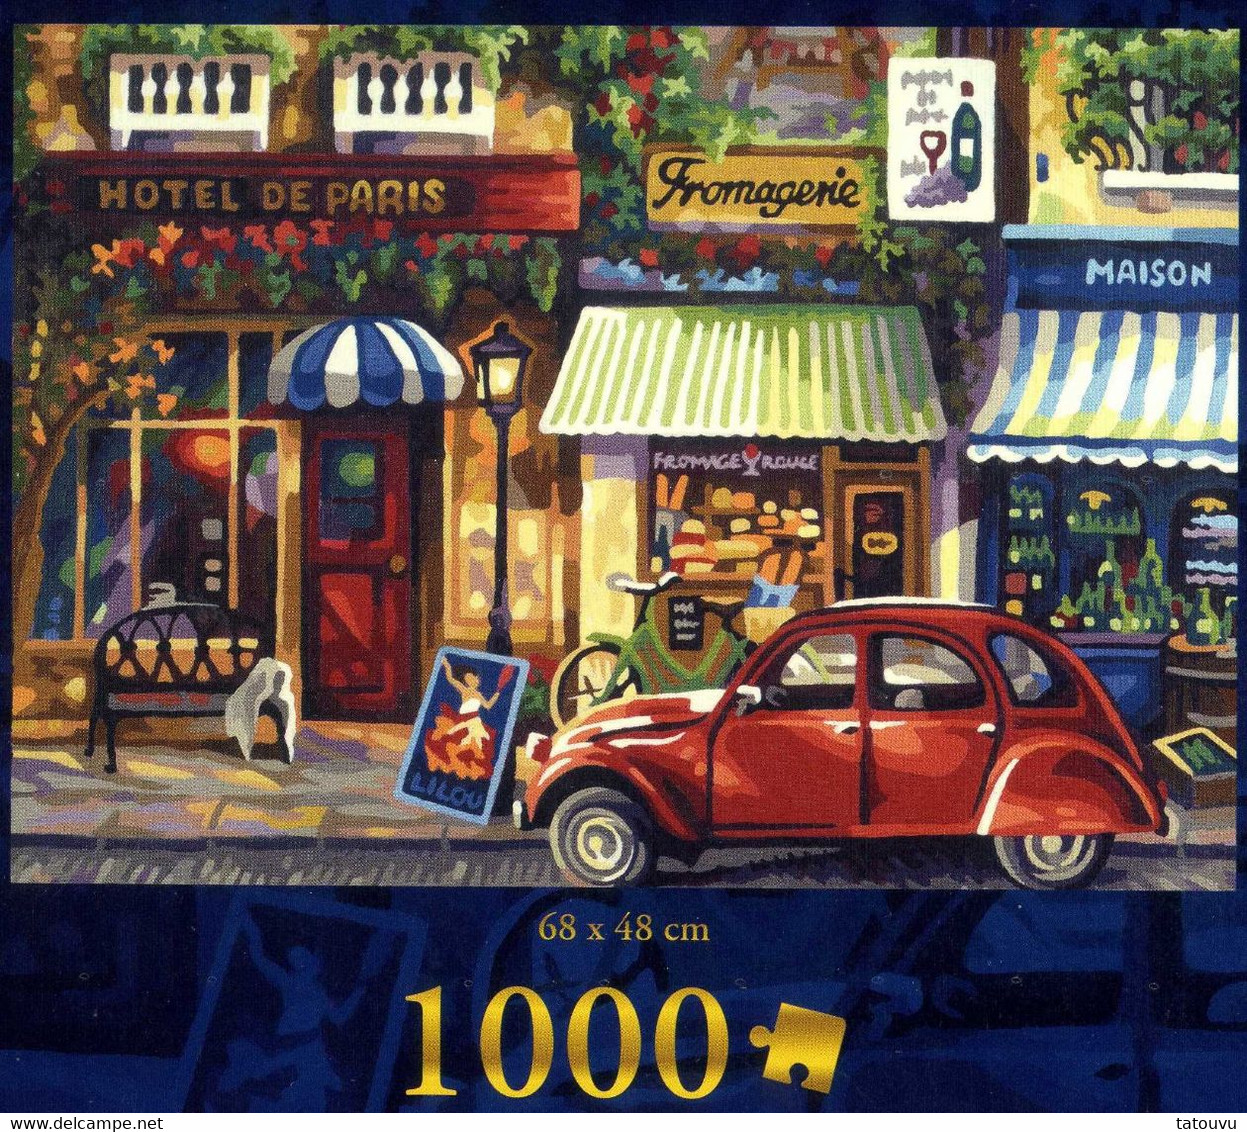 3 Puzzles!  "Paris années 60" 1000 +500+500pièces!  136cm sur 48cm ed. Noris neuf sous cello